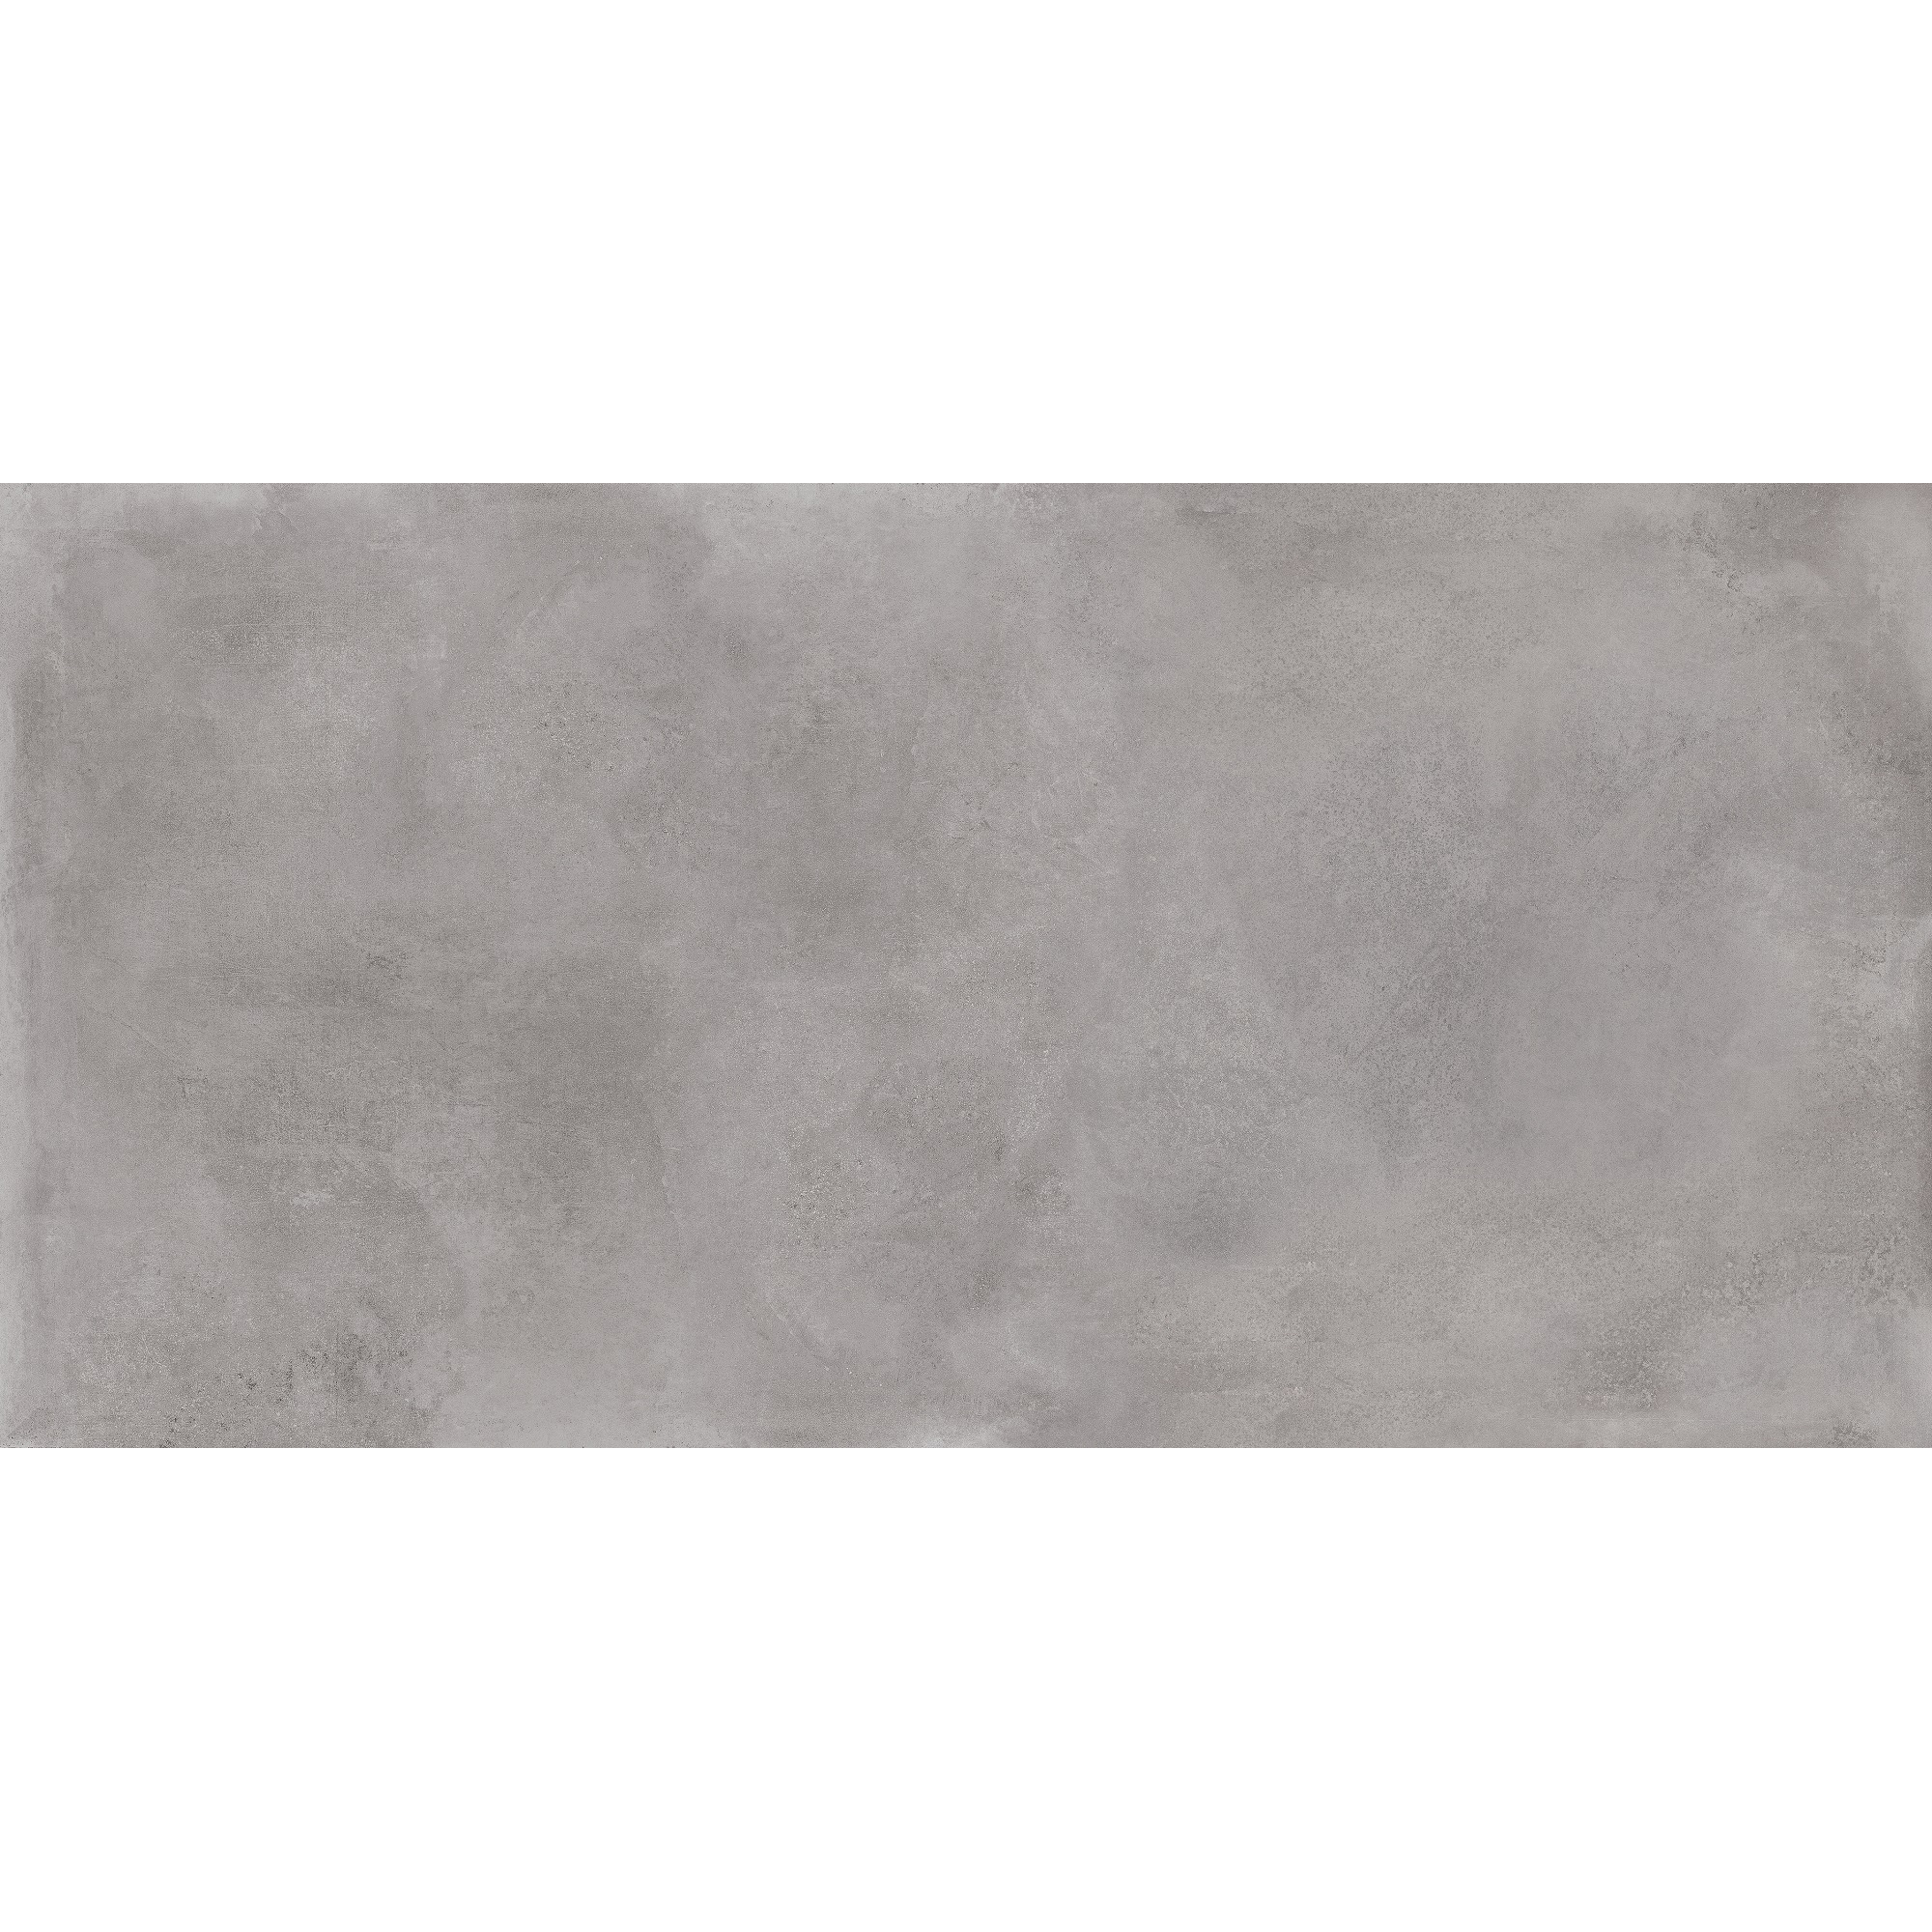 Bodenfliese 'Citywalk' Feinsteinzeug grigio matt 59,5 x 119 cm + product picture